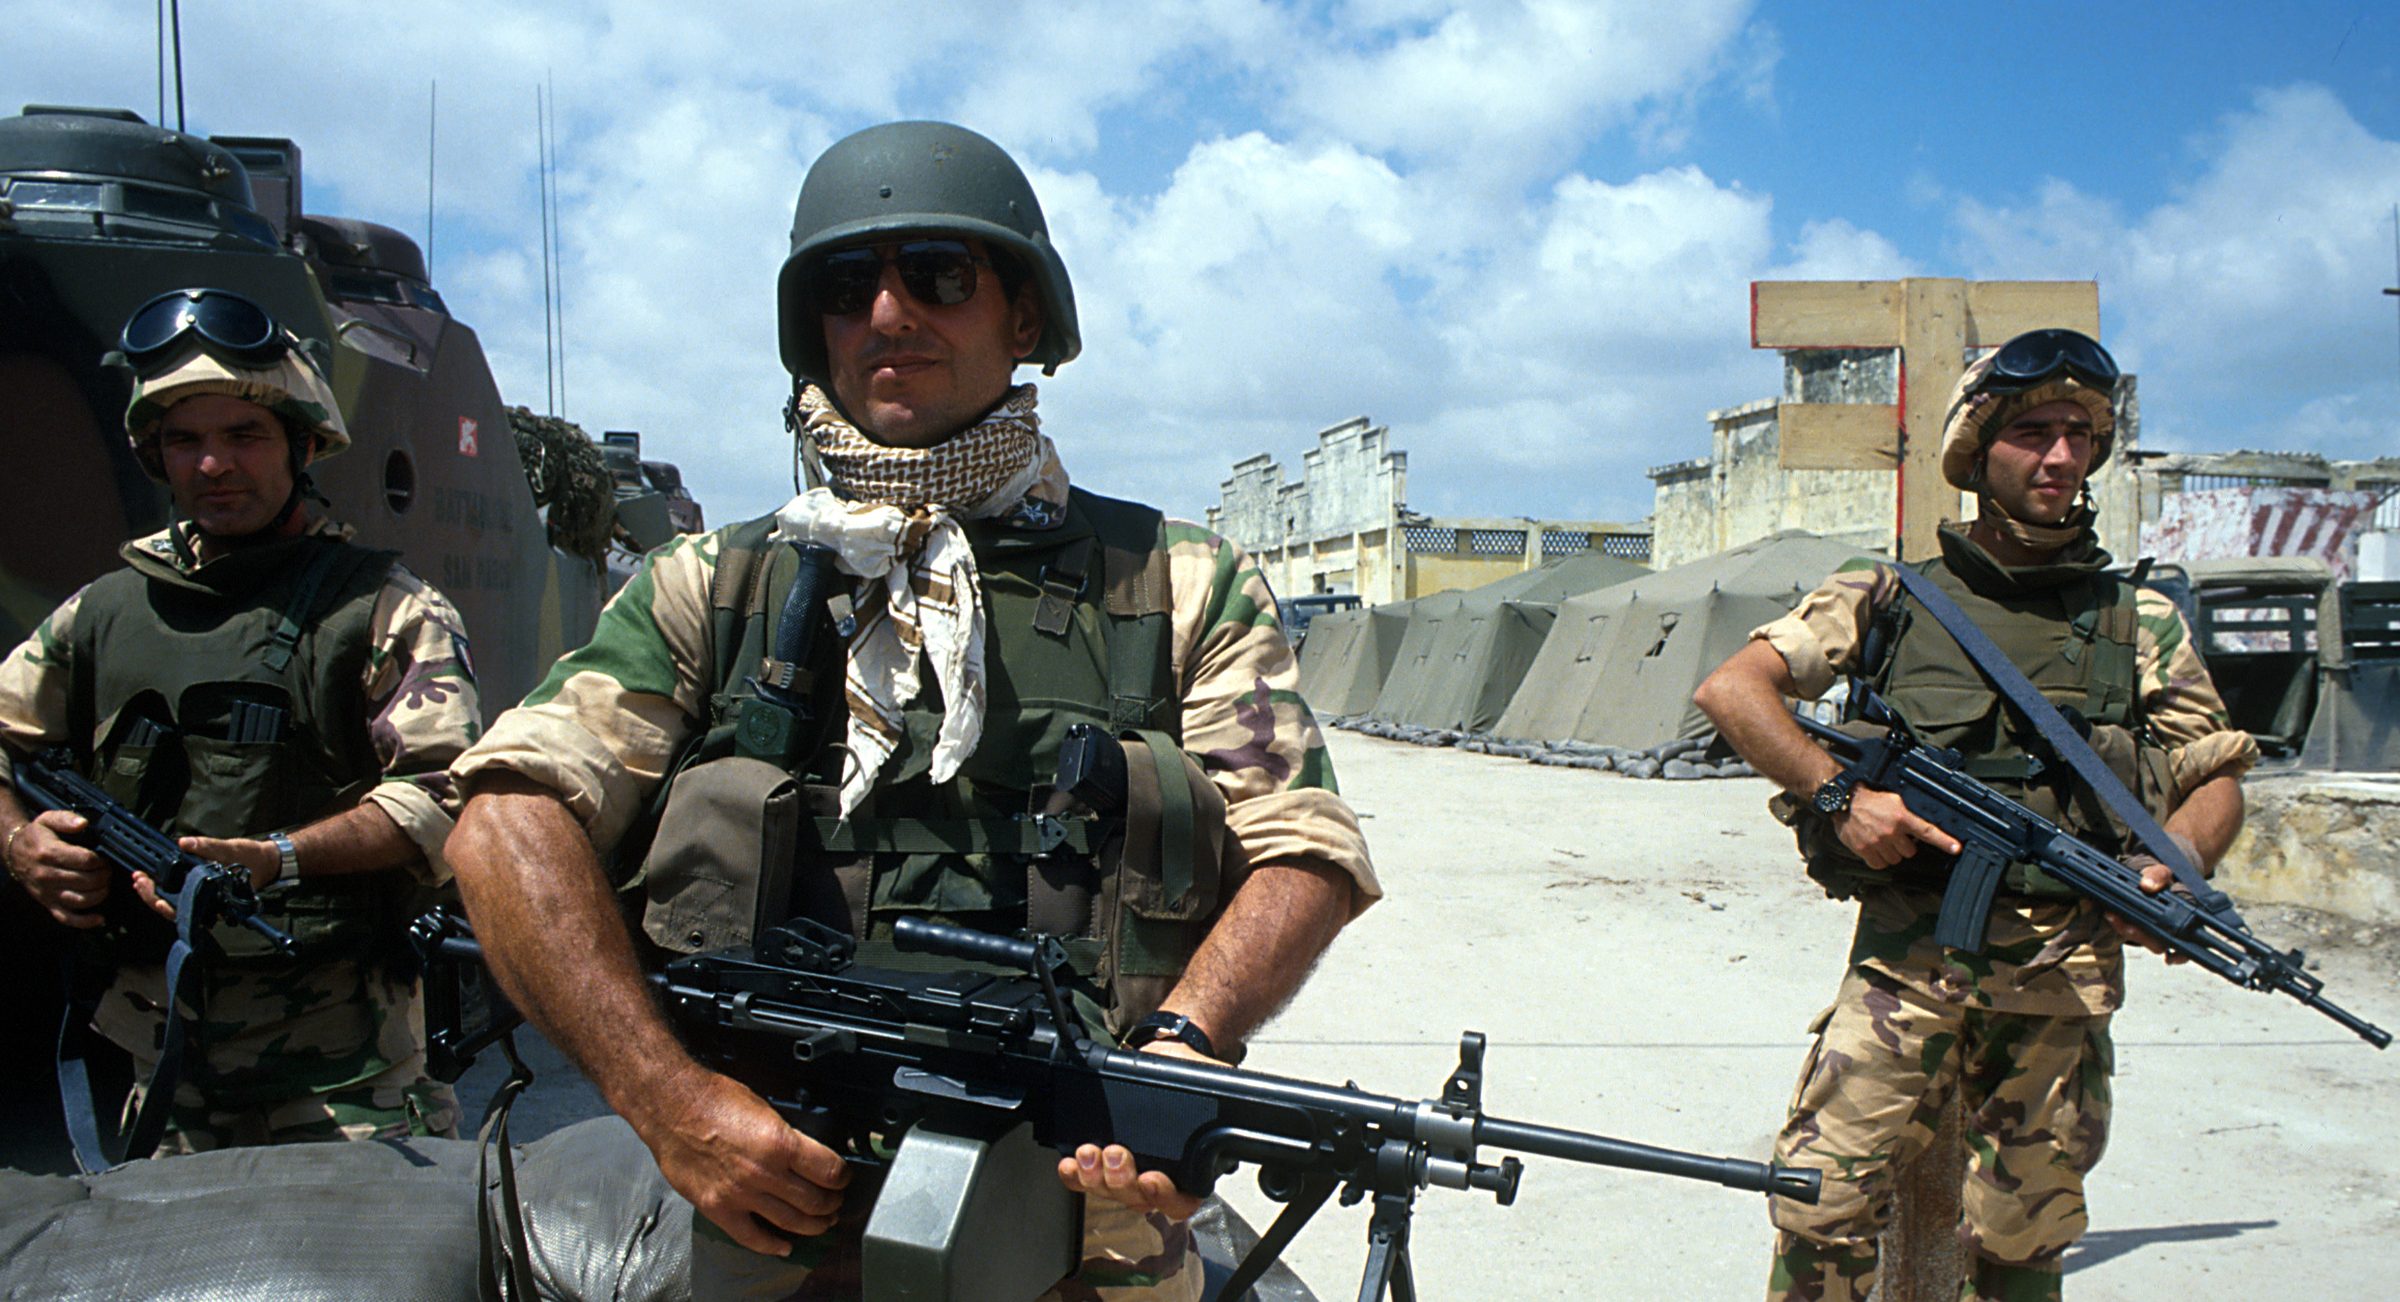 Soldati italiani in Somalia (La Presse)